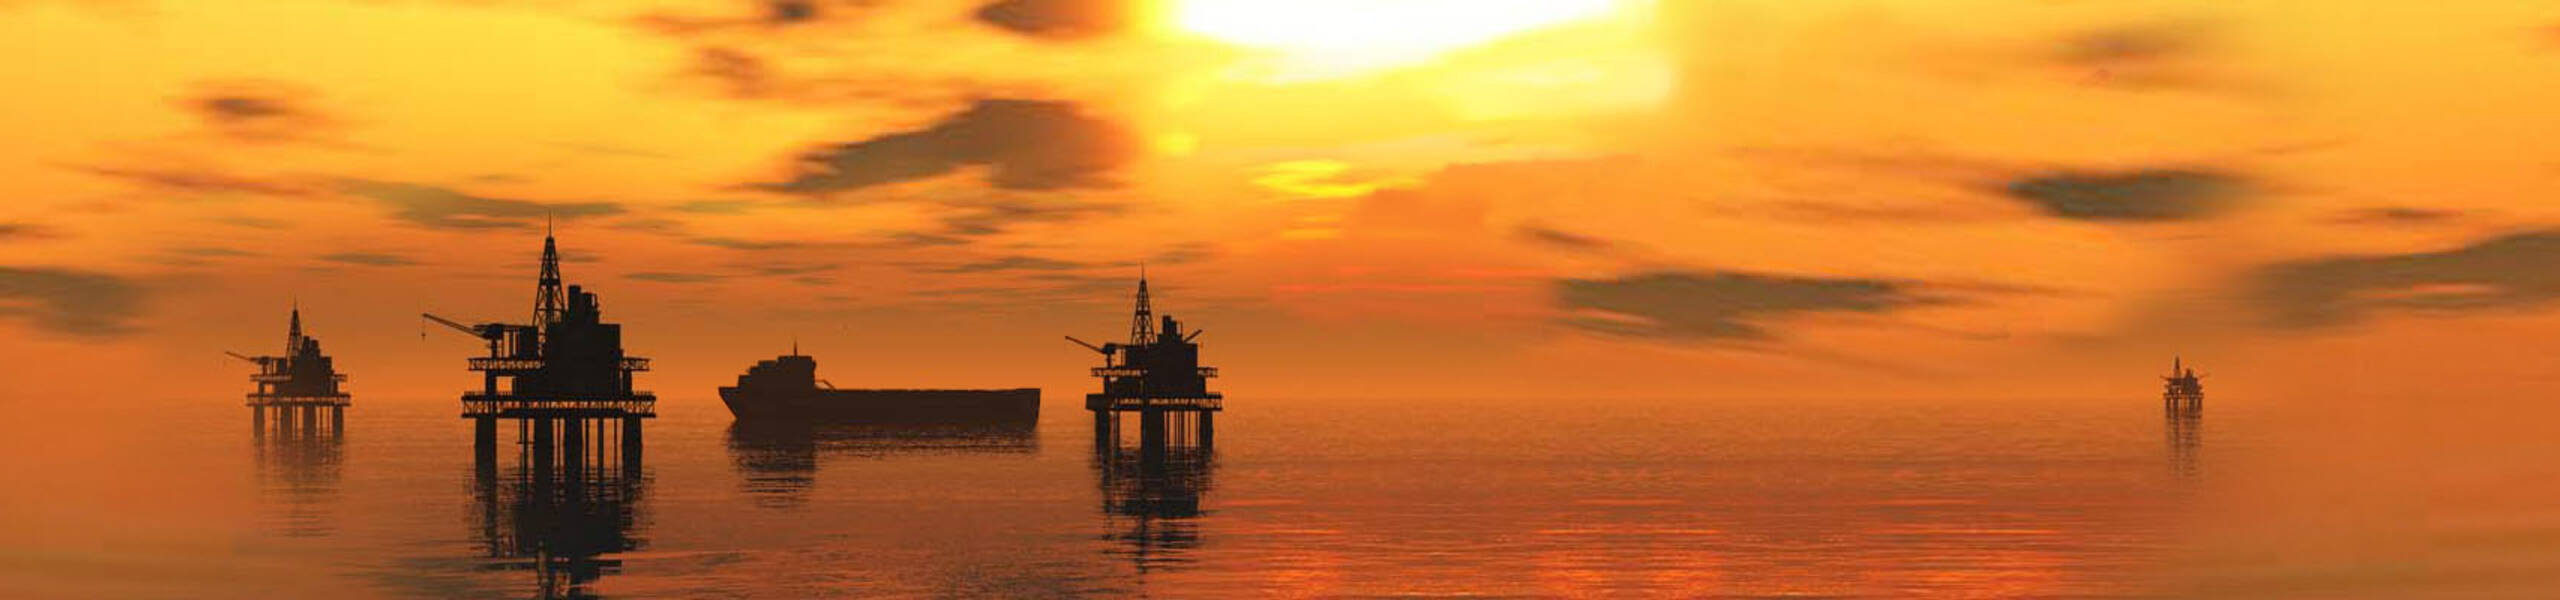 EIA: estoques de petróleo bruto cai 4,7 milhões de barris